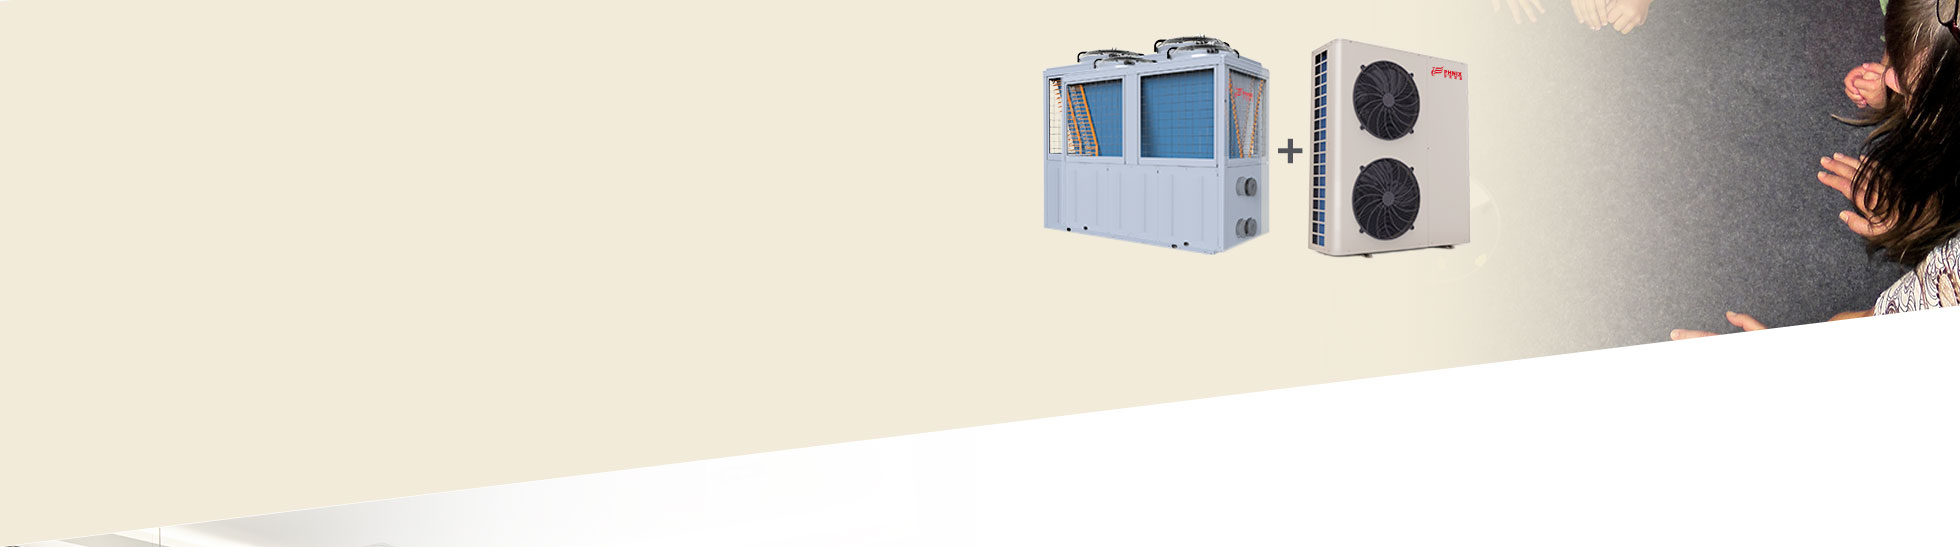 超低温空气能热泵中央采暖设备解决方案:可选用风冷模块以及循环热水机